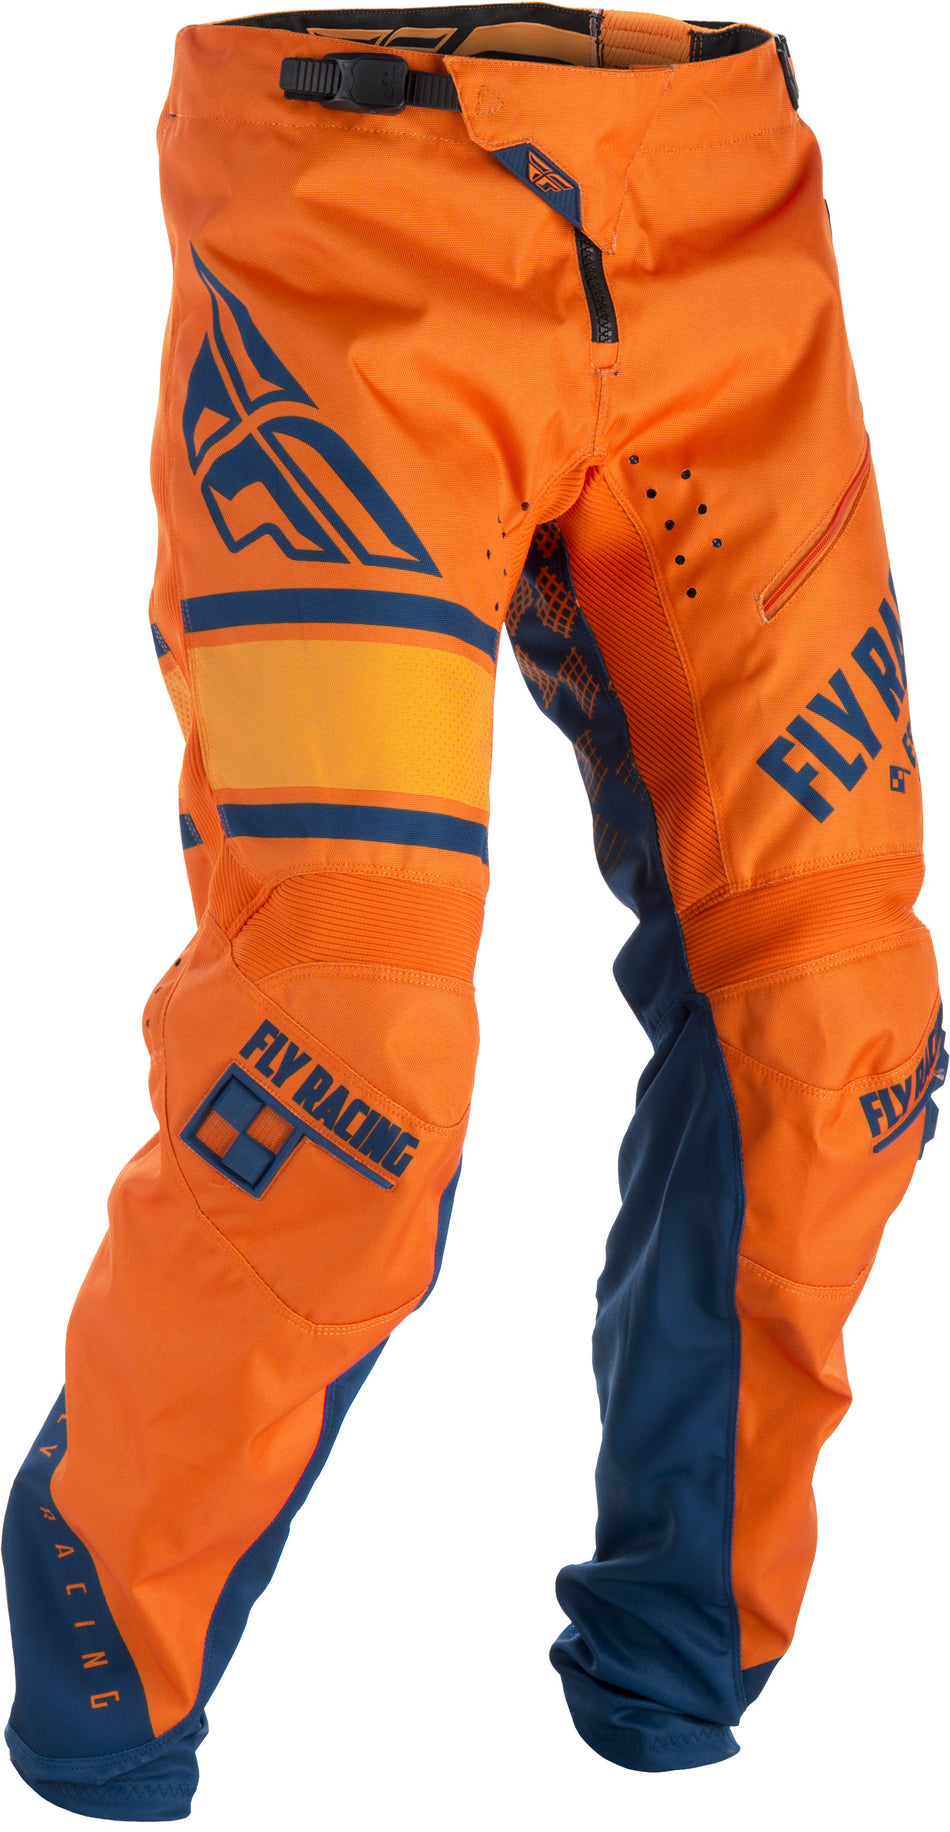 FLY RACING Kinetic Era Bicycle Pants Orange/Navy Sz 26 371-02826